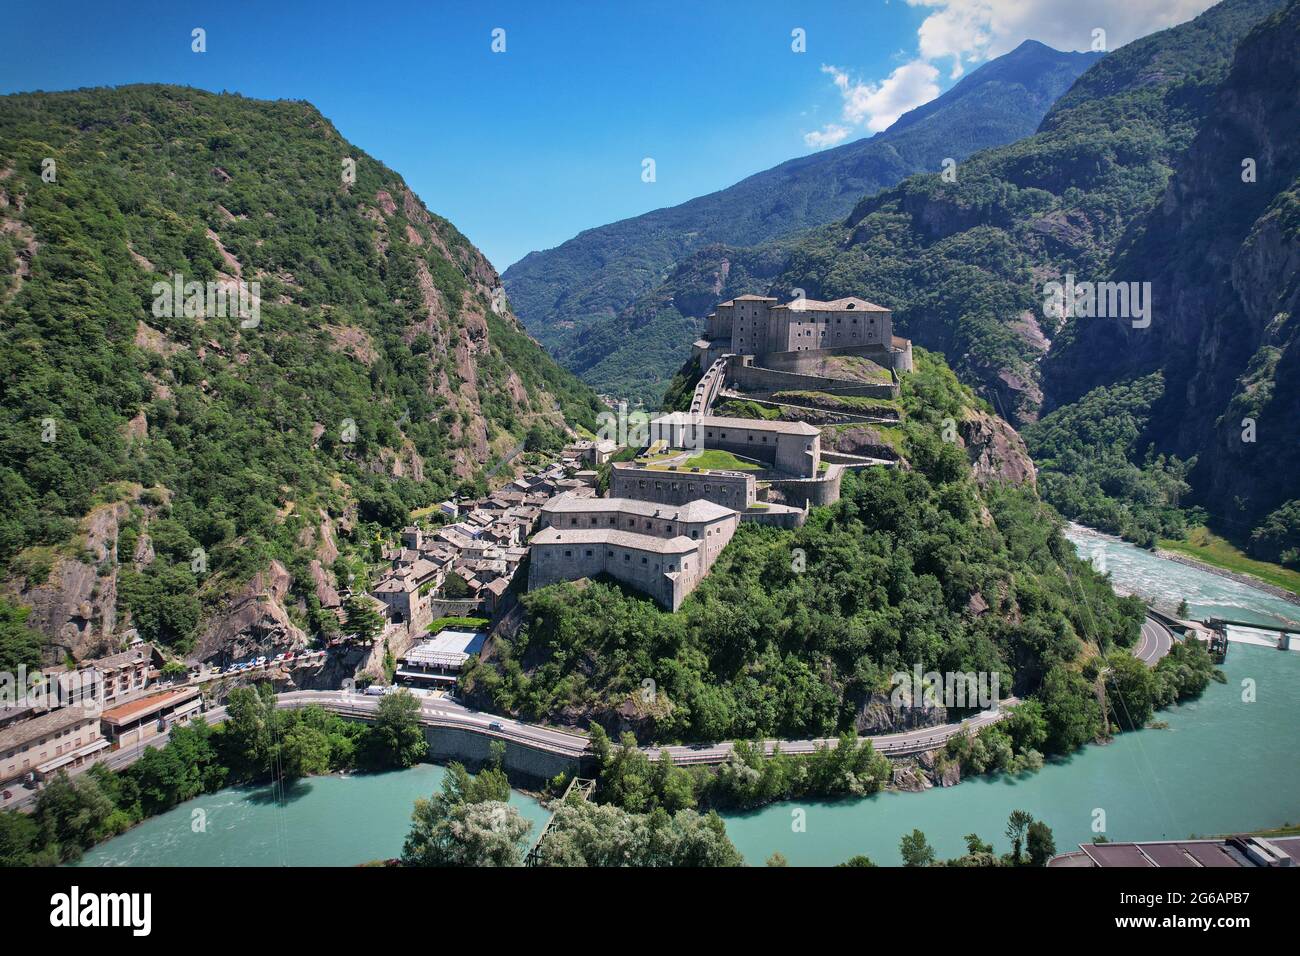 Splendidi castelli della Valle d'Aosta-fortezza di Bard, Italia settentrionale Foto Stock